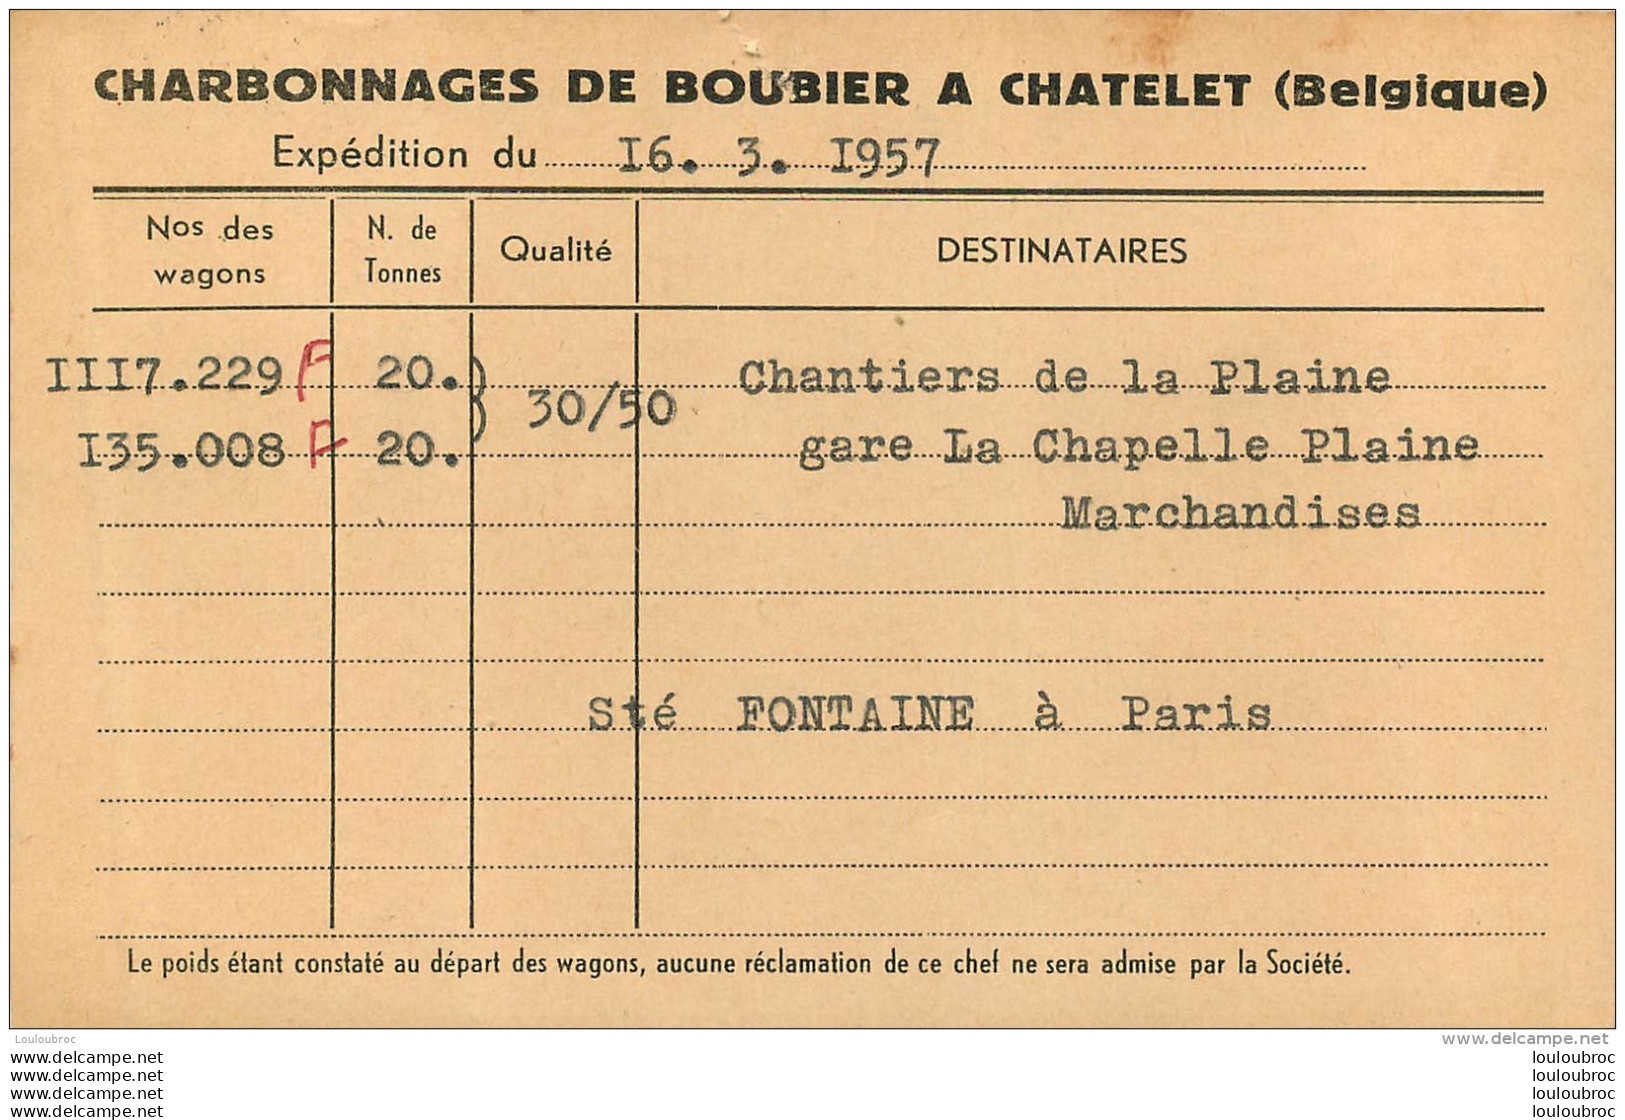 CHATELET  CHARBONNAGES DE BOUBIER 1957  CARTE EXPEDITION - Chatelet